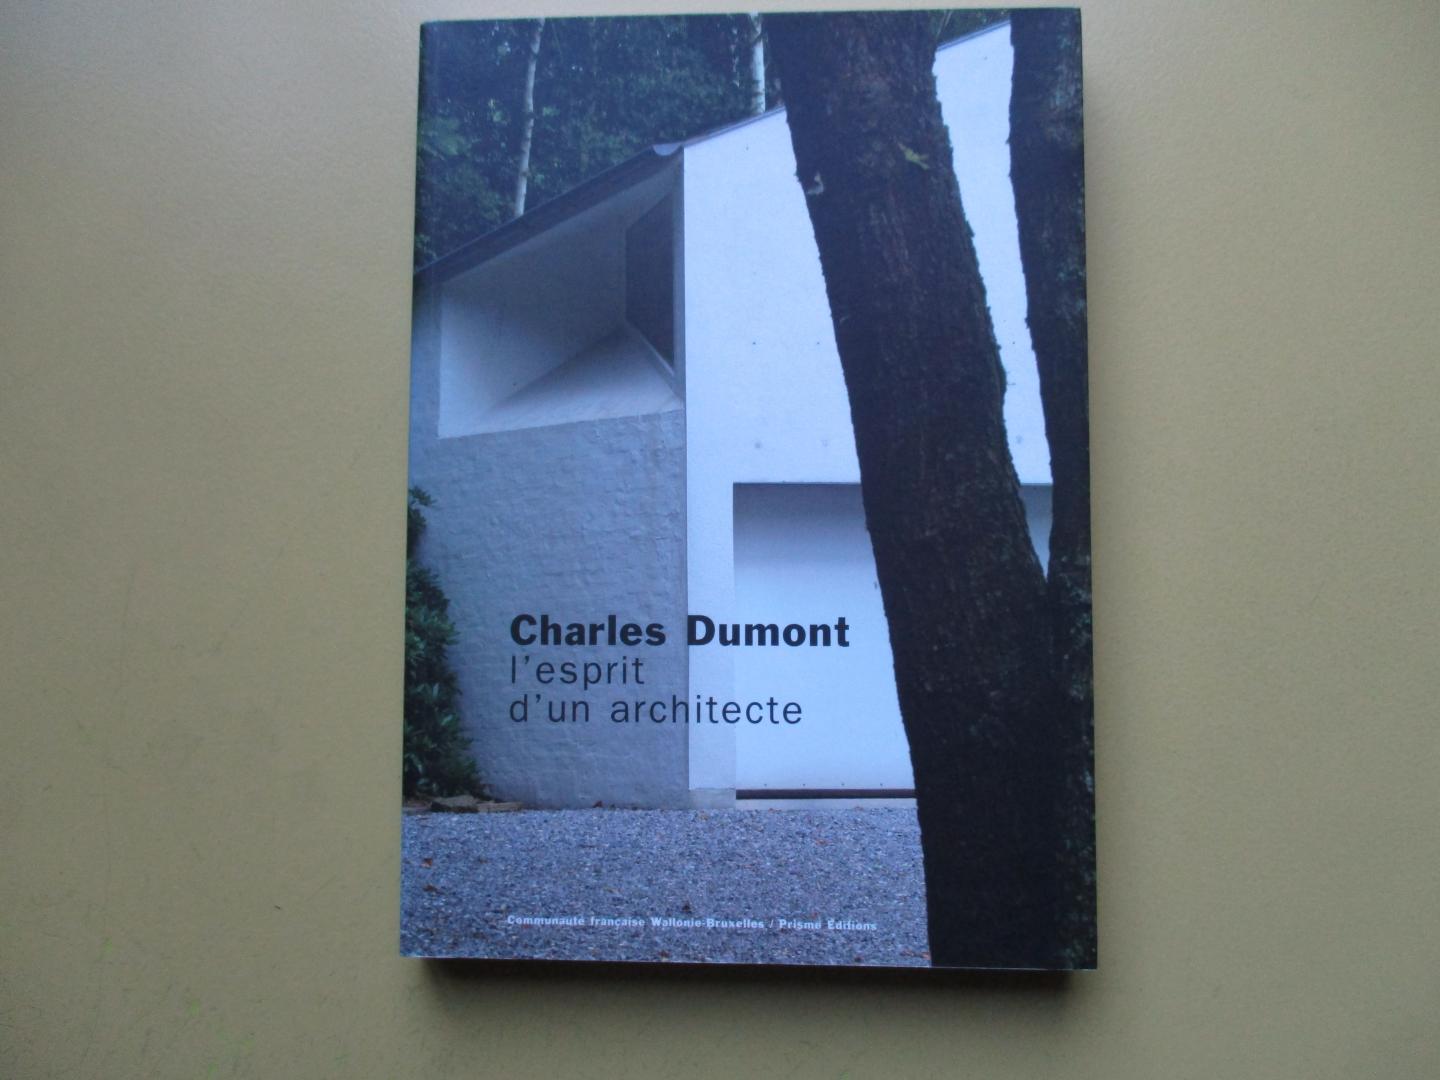 Richard, Alain - Charles Dumont, l'esprit d'un architecte